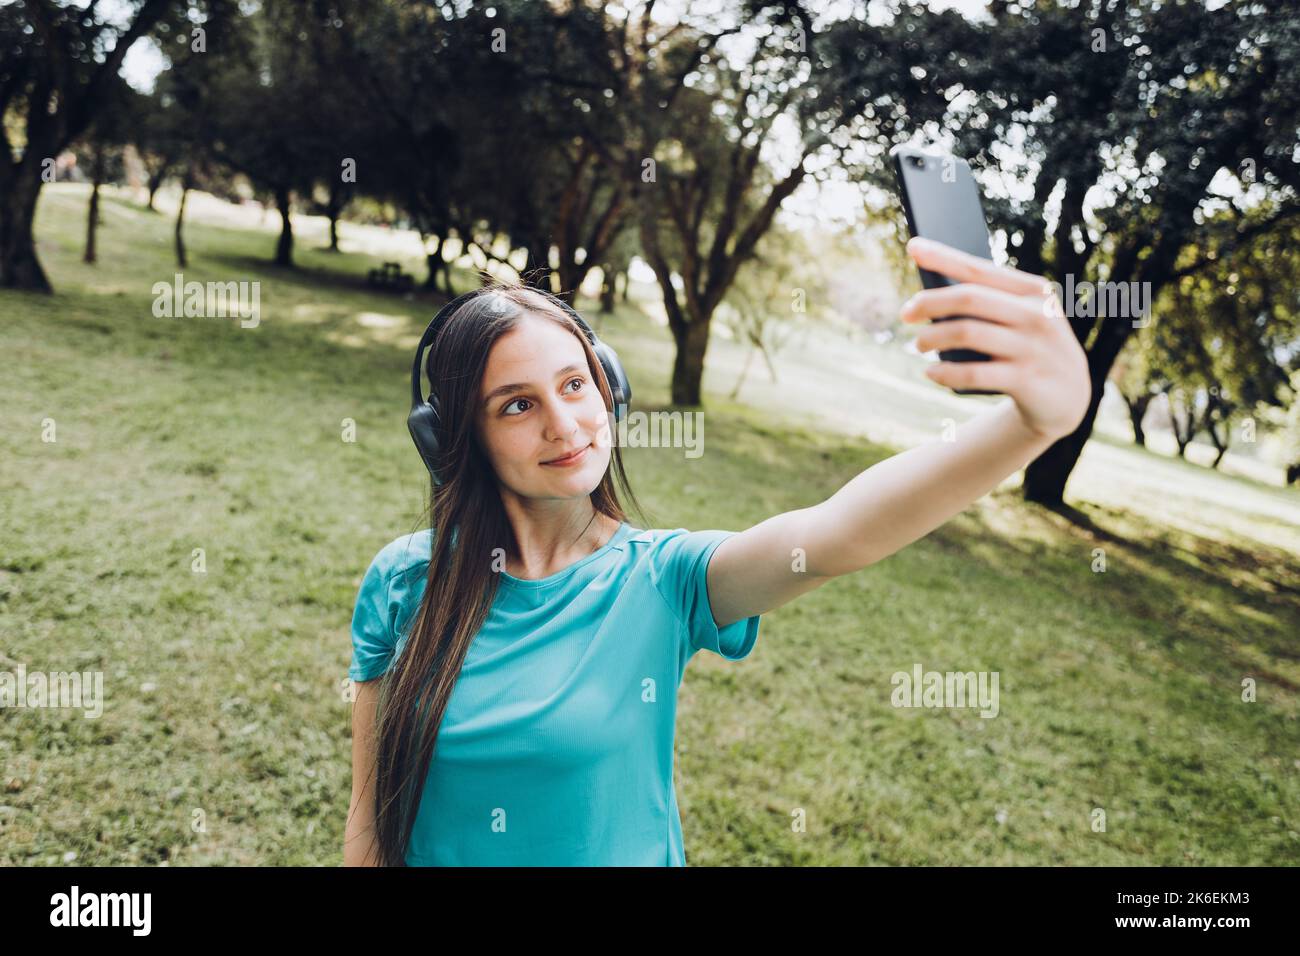 Ragazza giovane sorridente che indossa una t-shirt e cuffie turchesi, che porta un selfie con il cellulare in uno spazio naturale Foto Stock